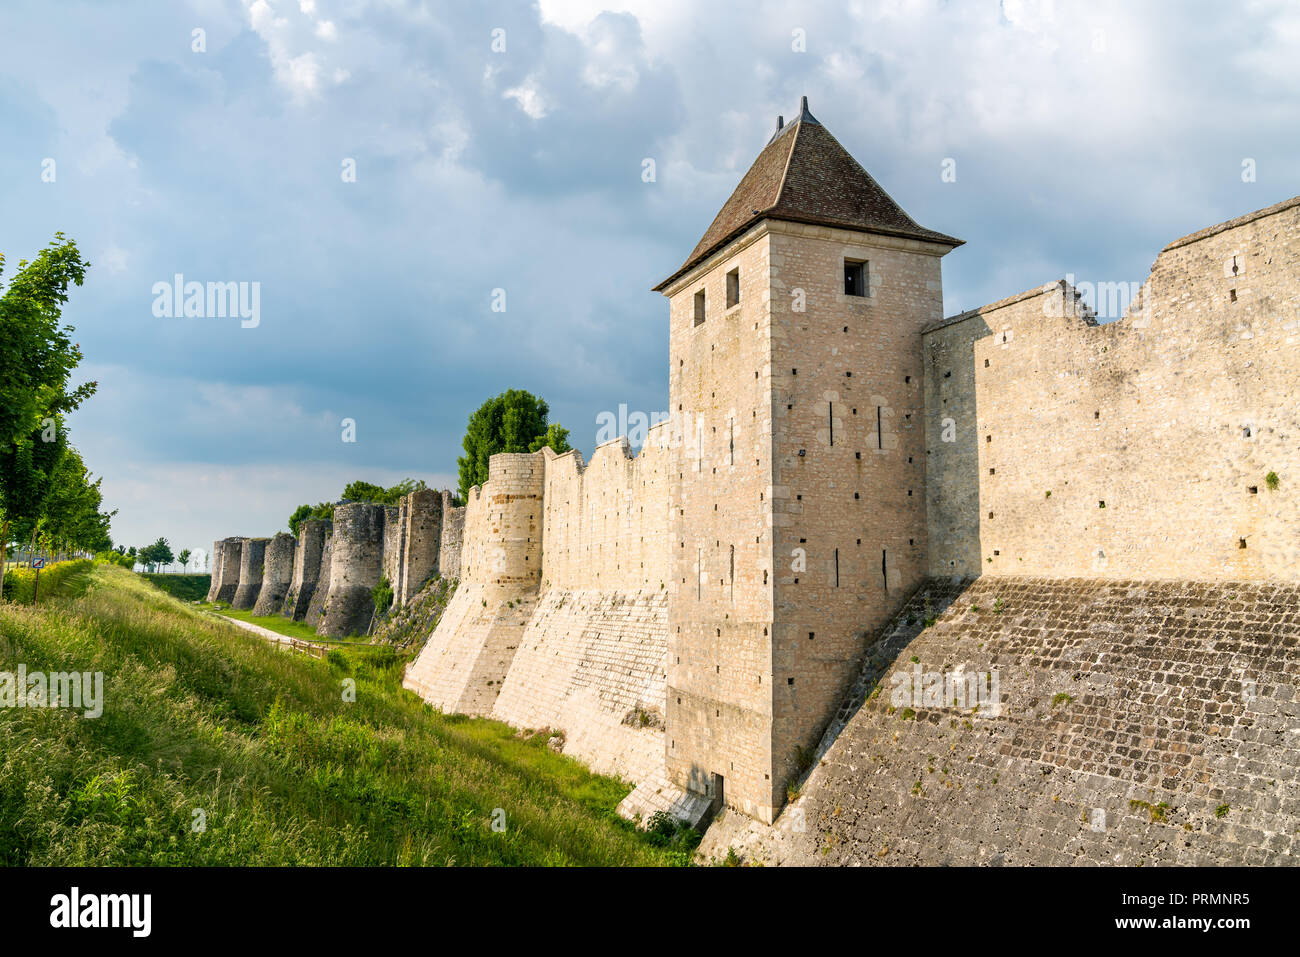 Mur de la ville de Provins, ville de foire médiévale en France Banque D'Images